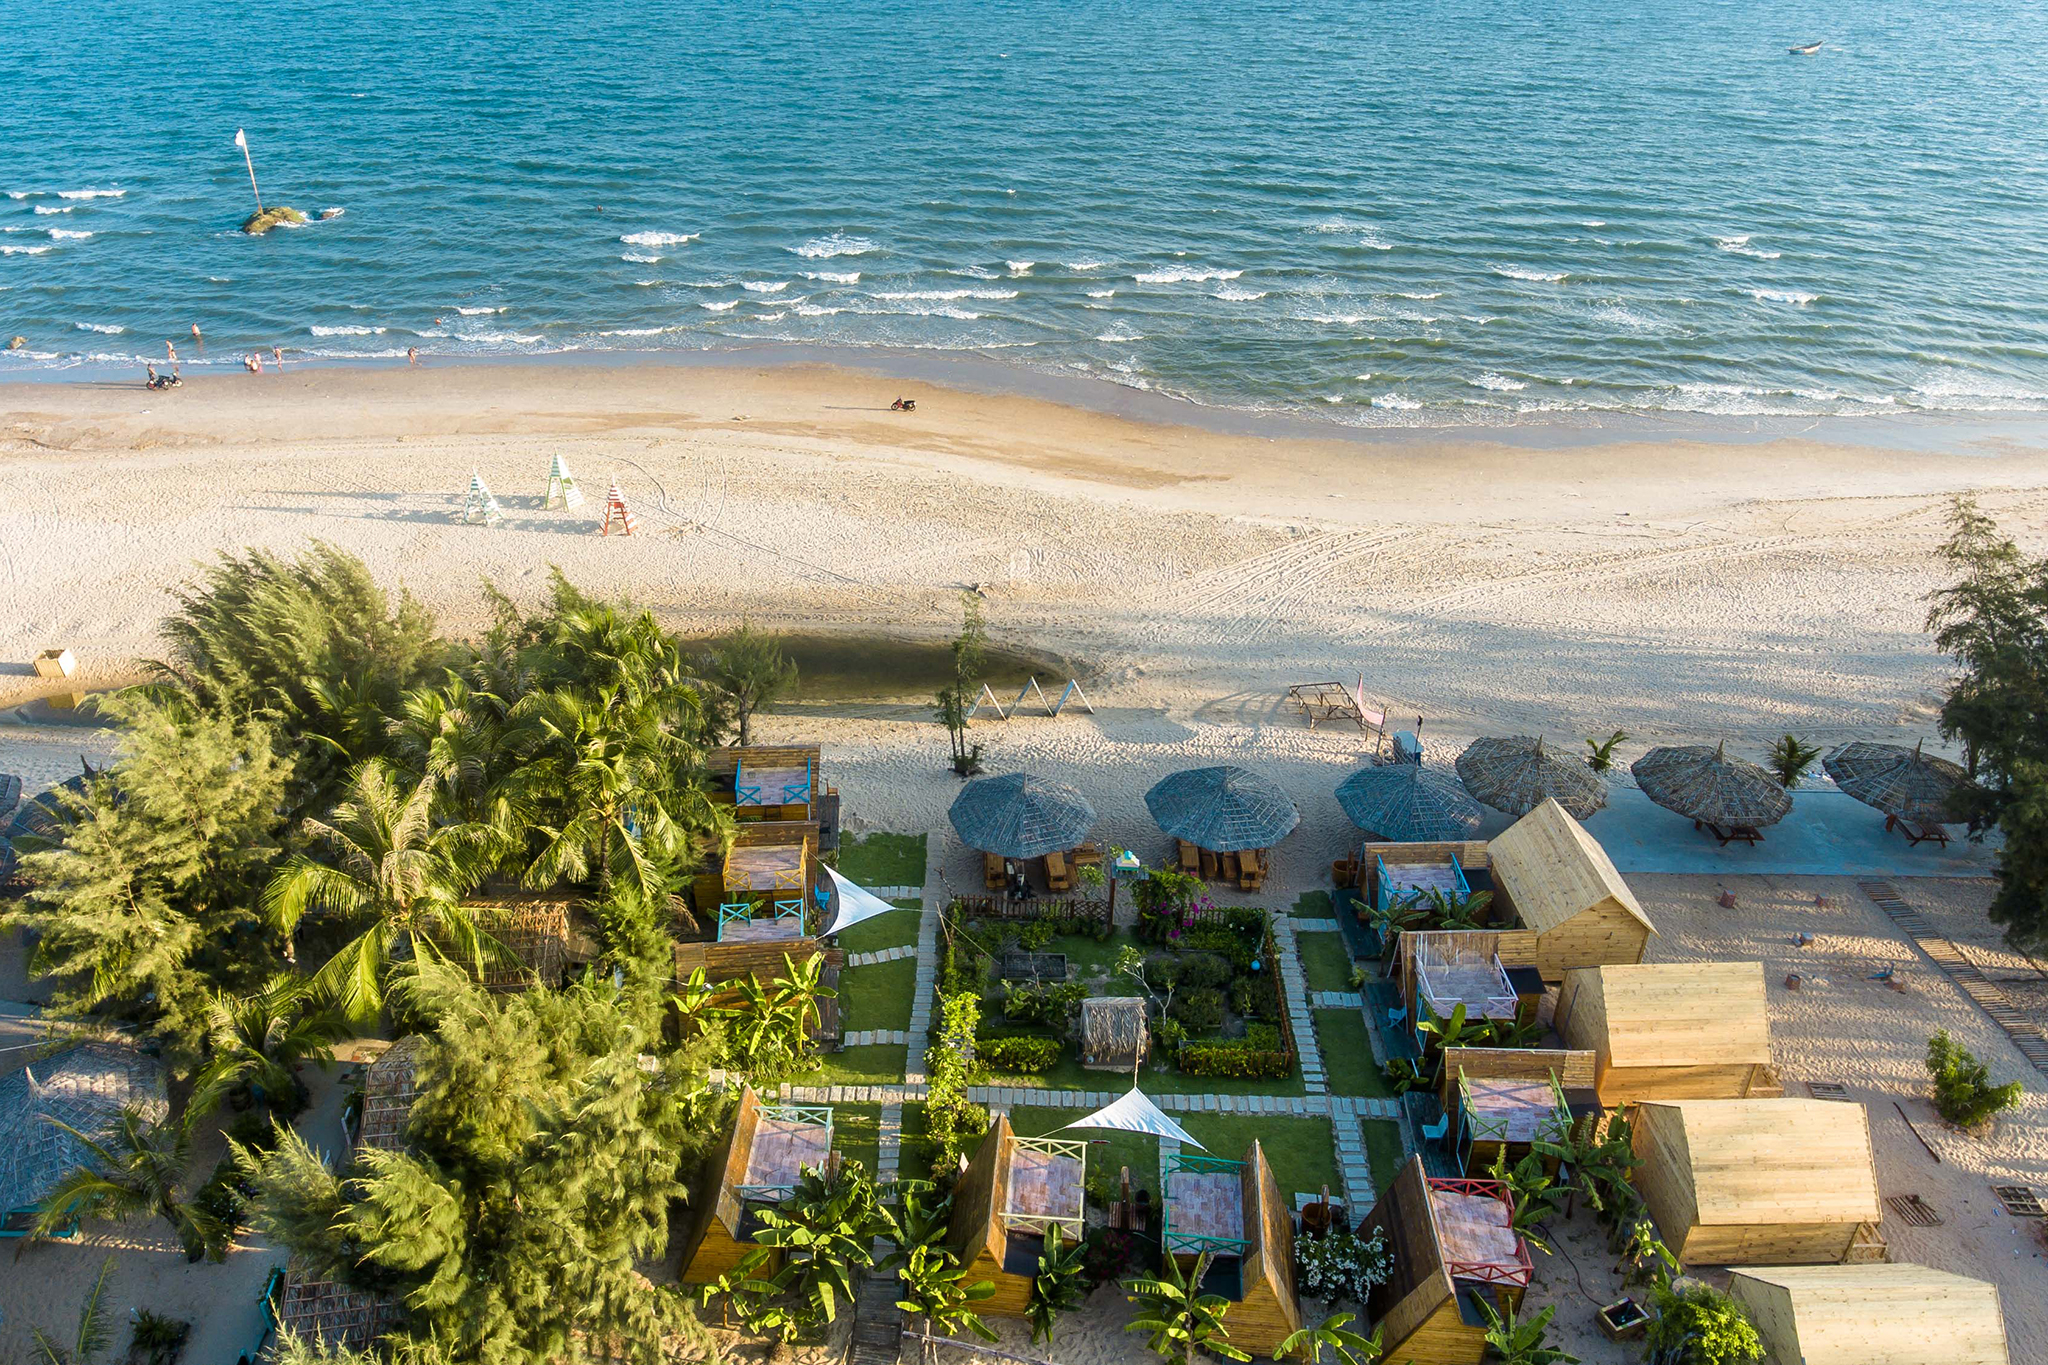 https:/Review Coco Beach Lagi Bình Thuận - Xứ sở đầy màu sắcdidaucogi.com/review-cong-troi-tam-dao-chi-tiet-tu-a-z-nam-2022/